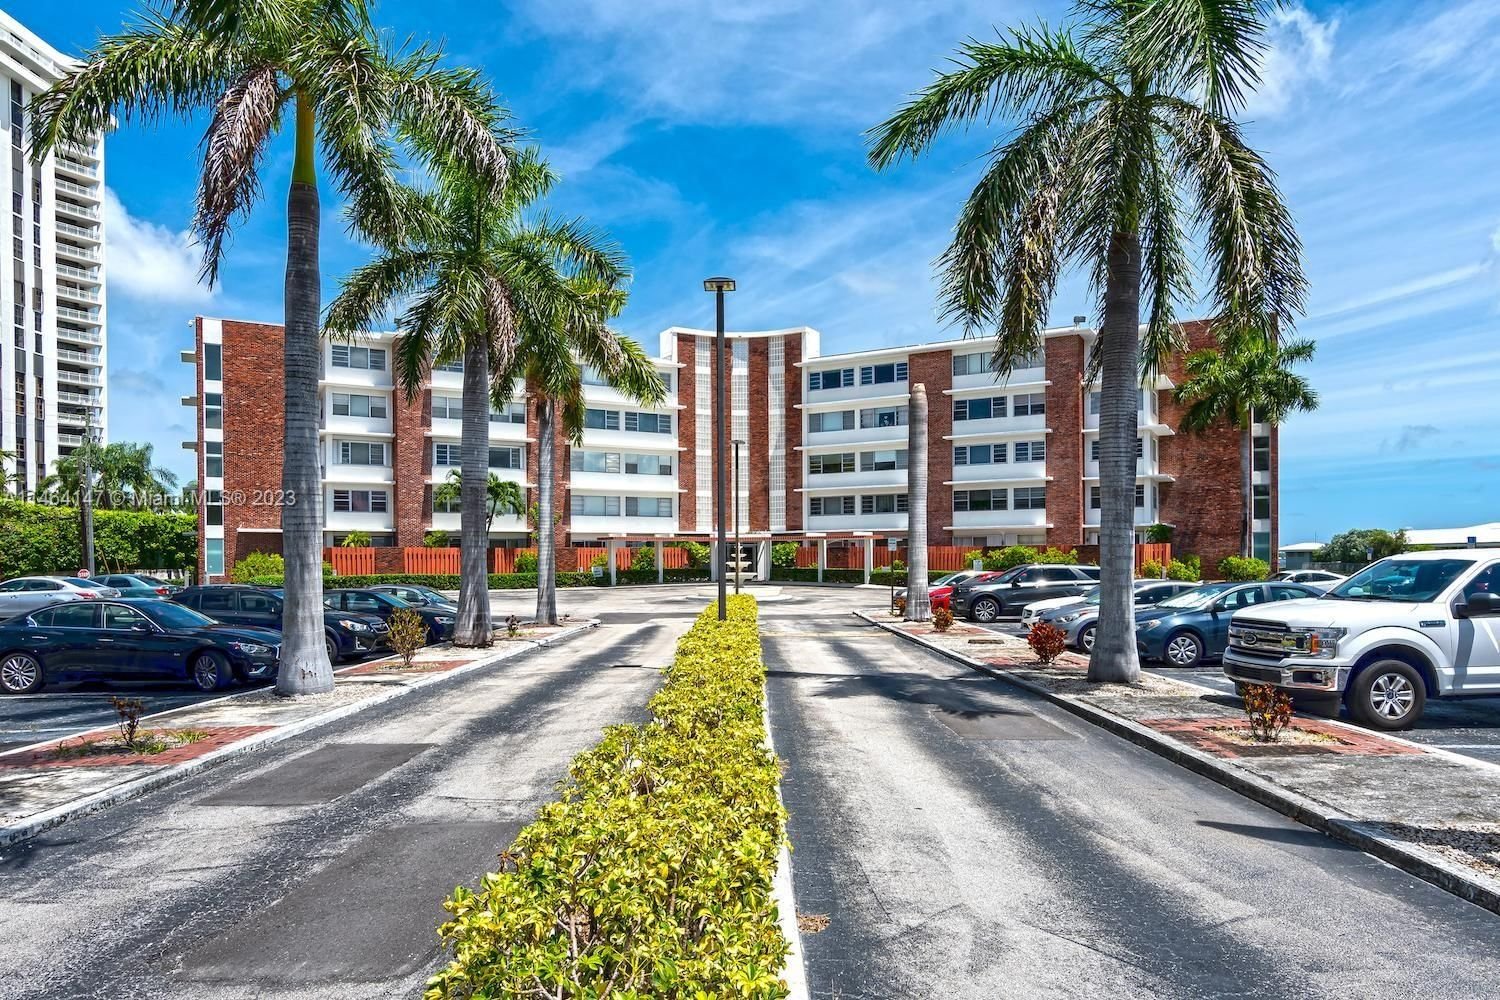 Real estate property located at 1700 105th St #514, Miami-Dade County, THE SHORES CONDO, Miami Shores, FL